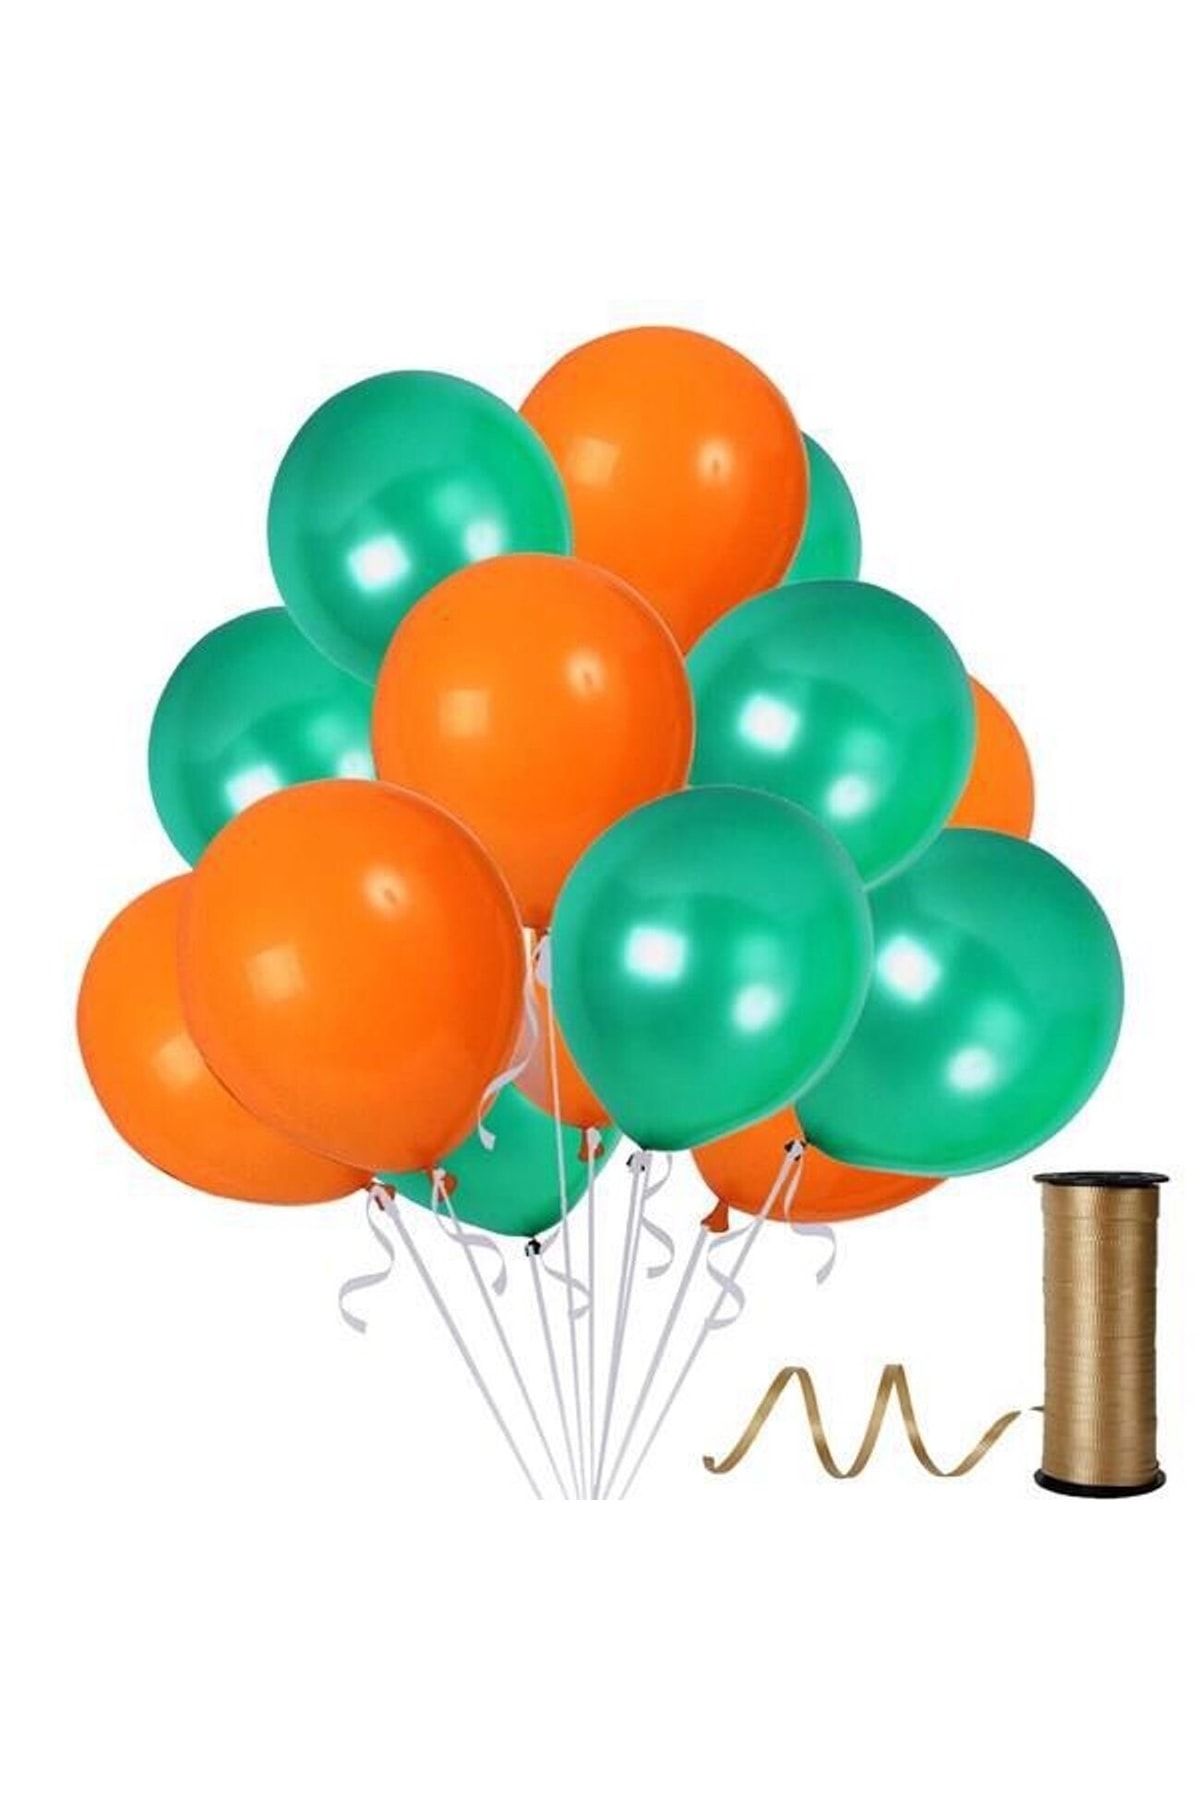 MKYS 10 Adet Metalik Balon (koyu Yeşil - Turuncu )- Helyum Gazı Uyumludur.-dogum Günü Parti Balonları